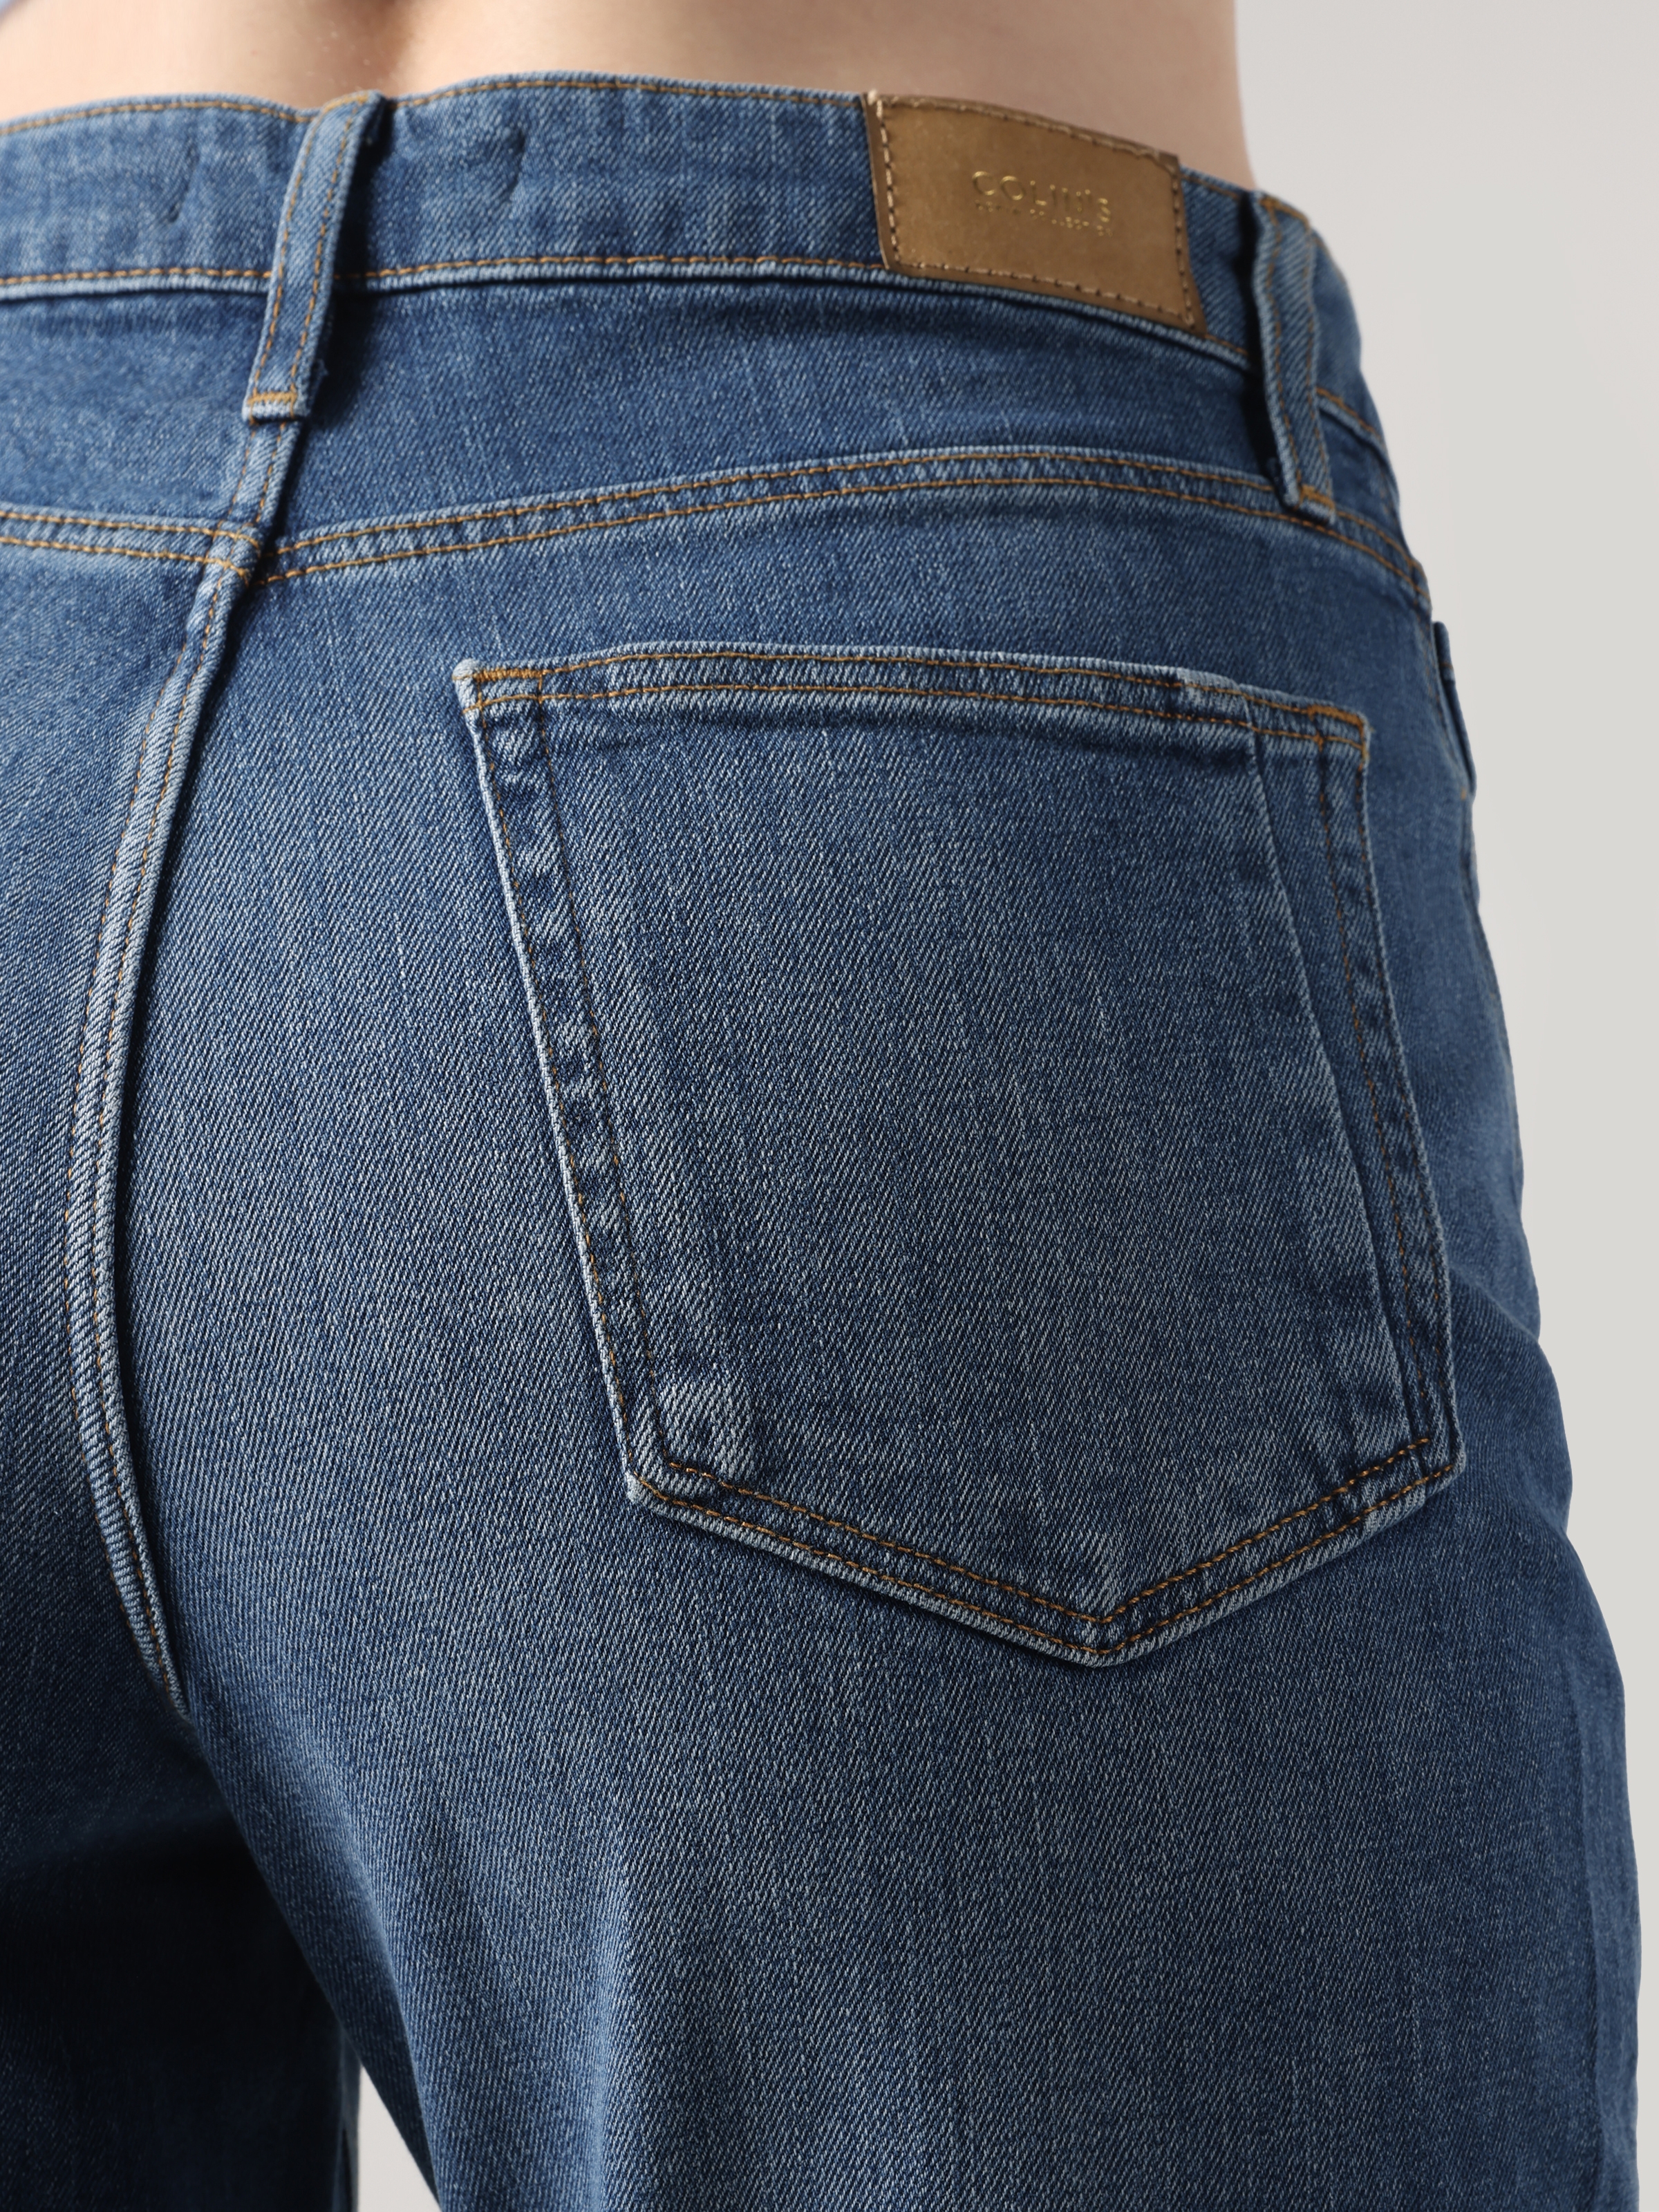 Afișați detalii pentru Pantaloni De Dama Denim Slim Fit 891 MAYA